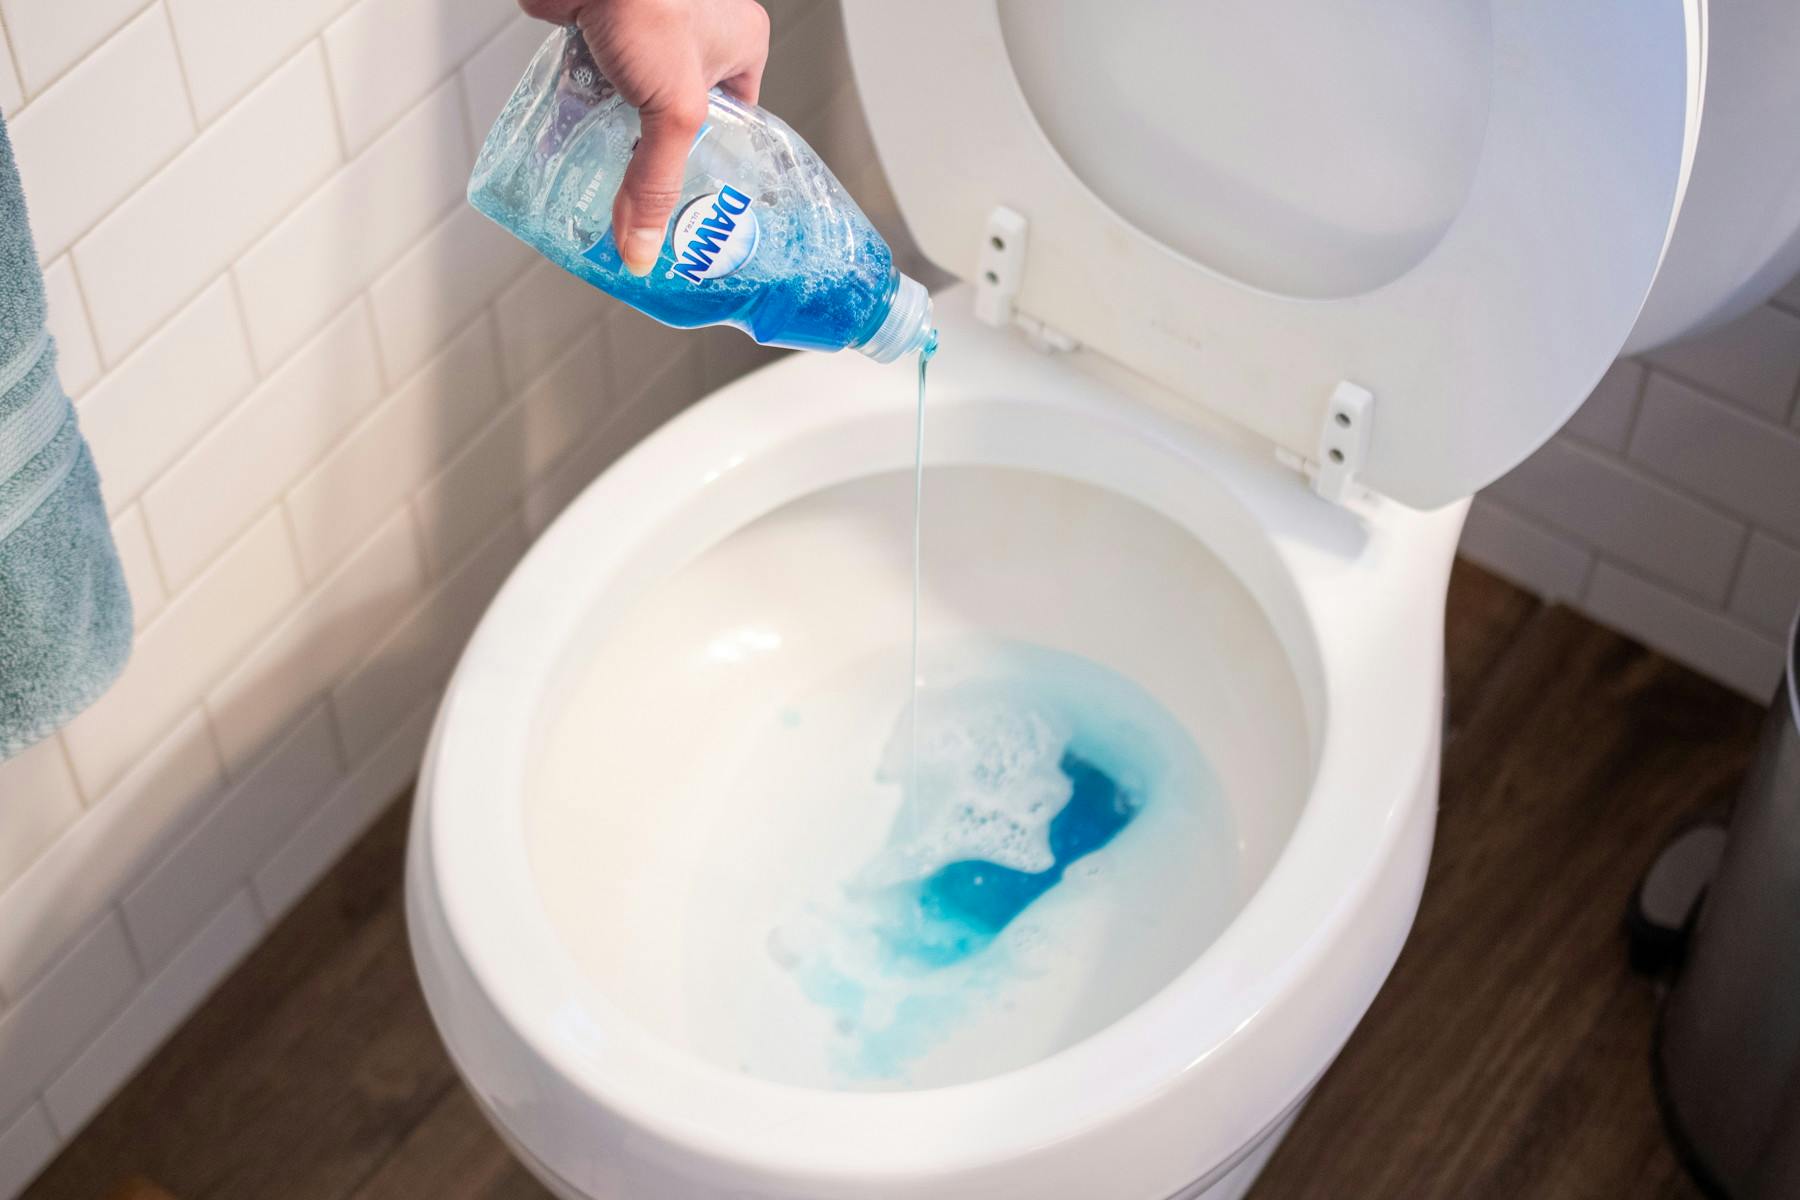 dies dawn liquid siap help unclog bathroom sink